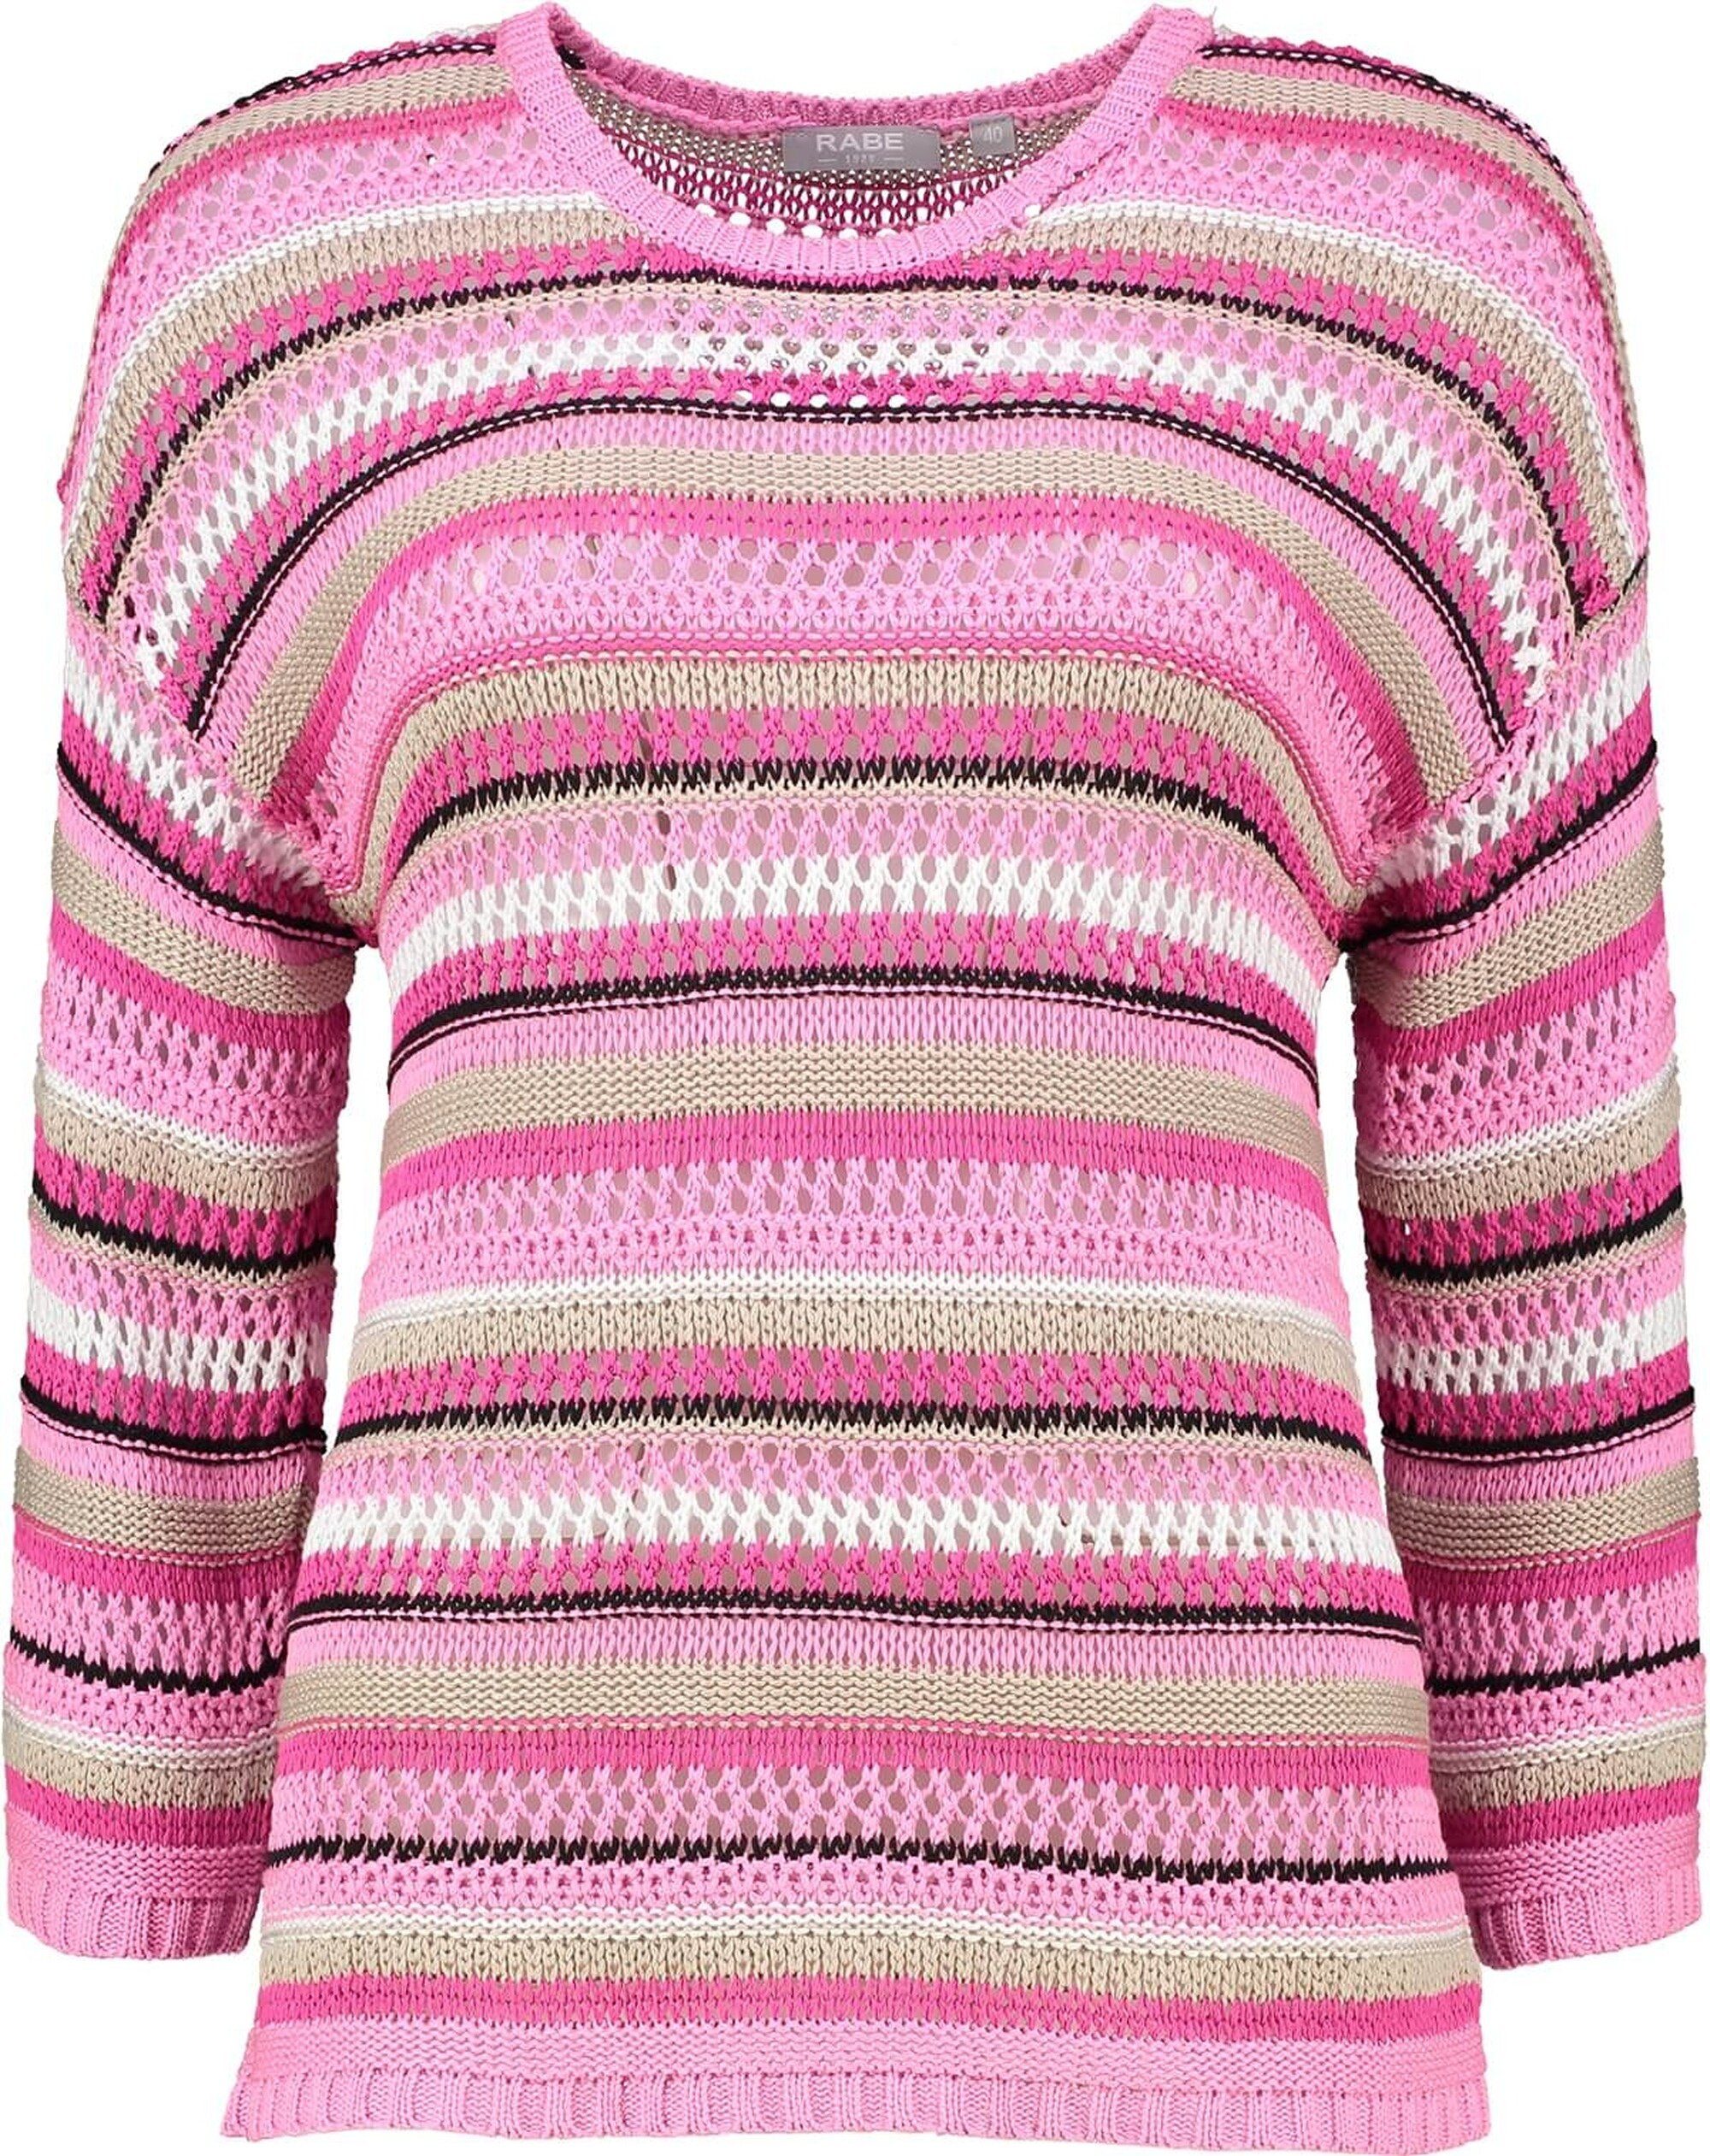 Rabe Strickpullover RABE Pullover pink gestreift in edlem Bändchengarn-Strickmuster